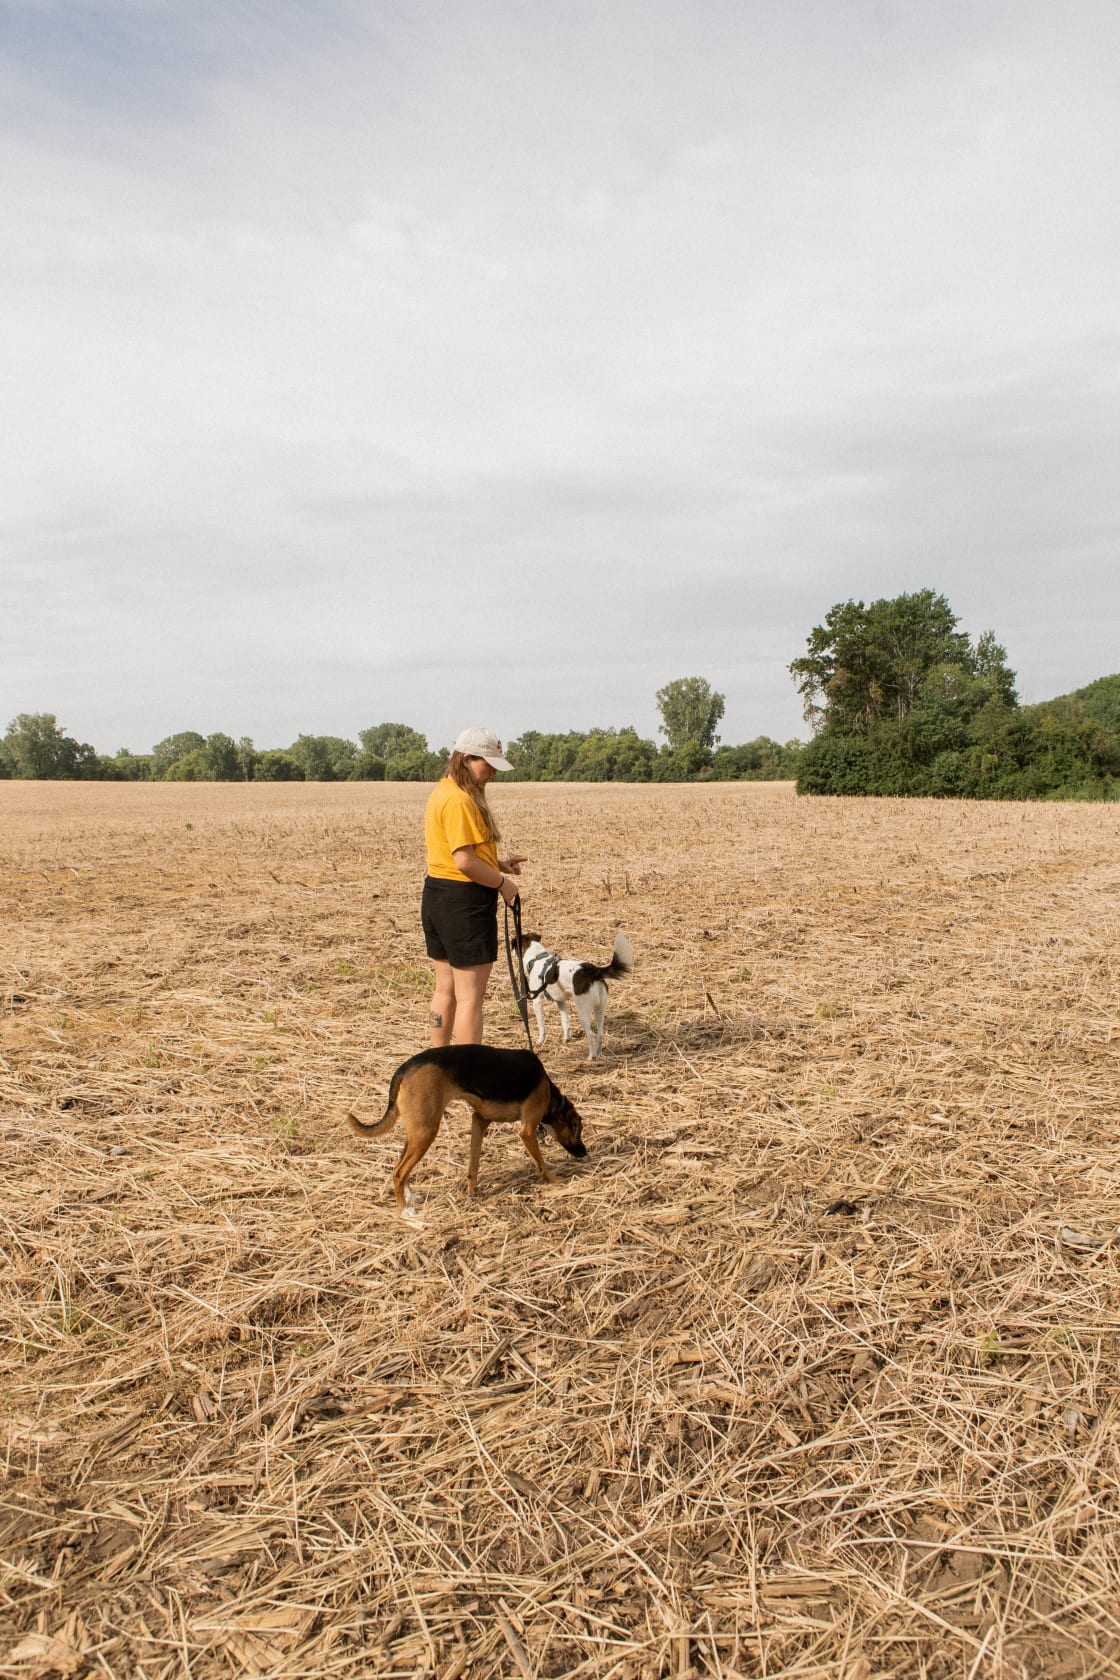 We loved talking a little walk around the wide open fields!